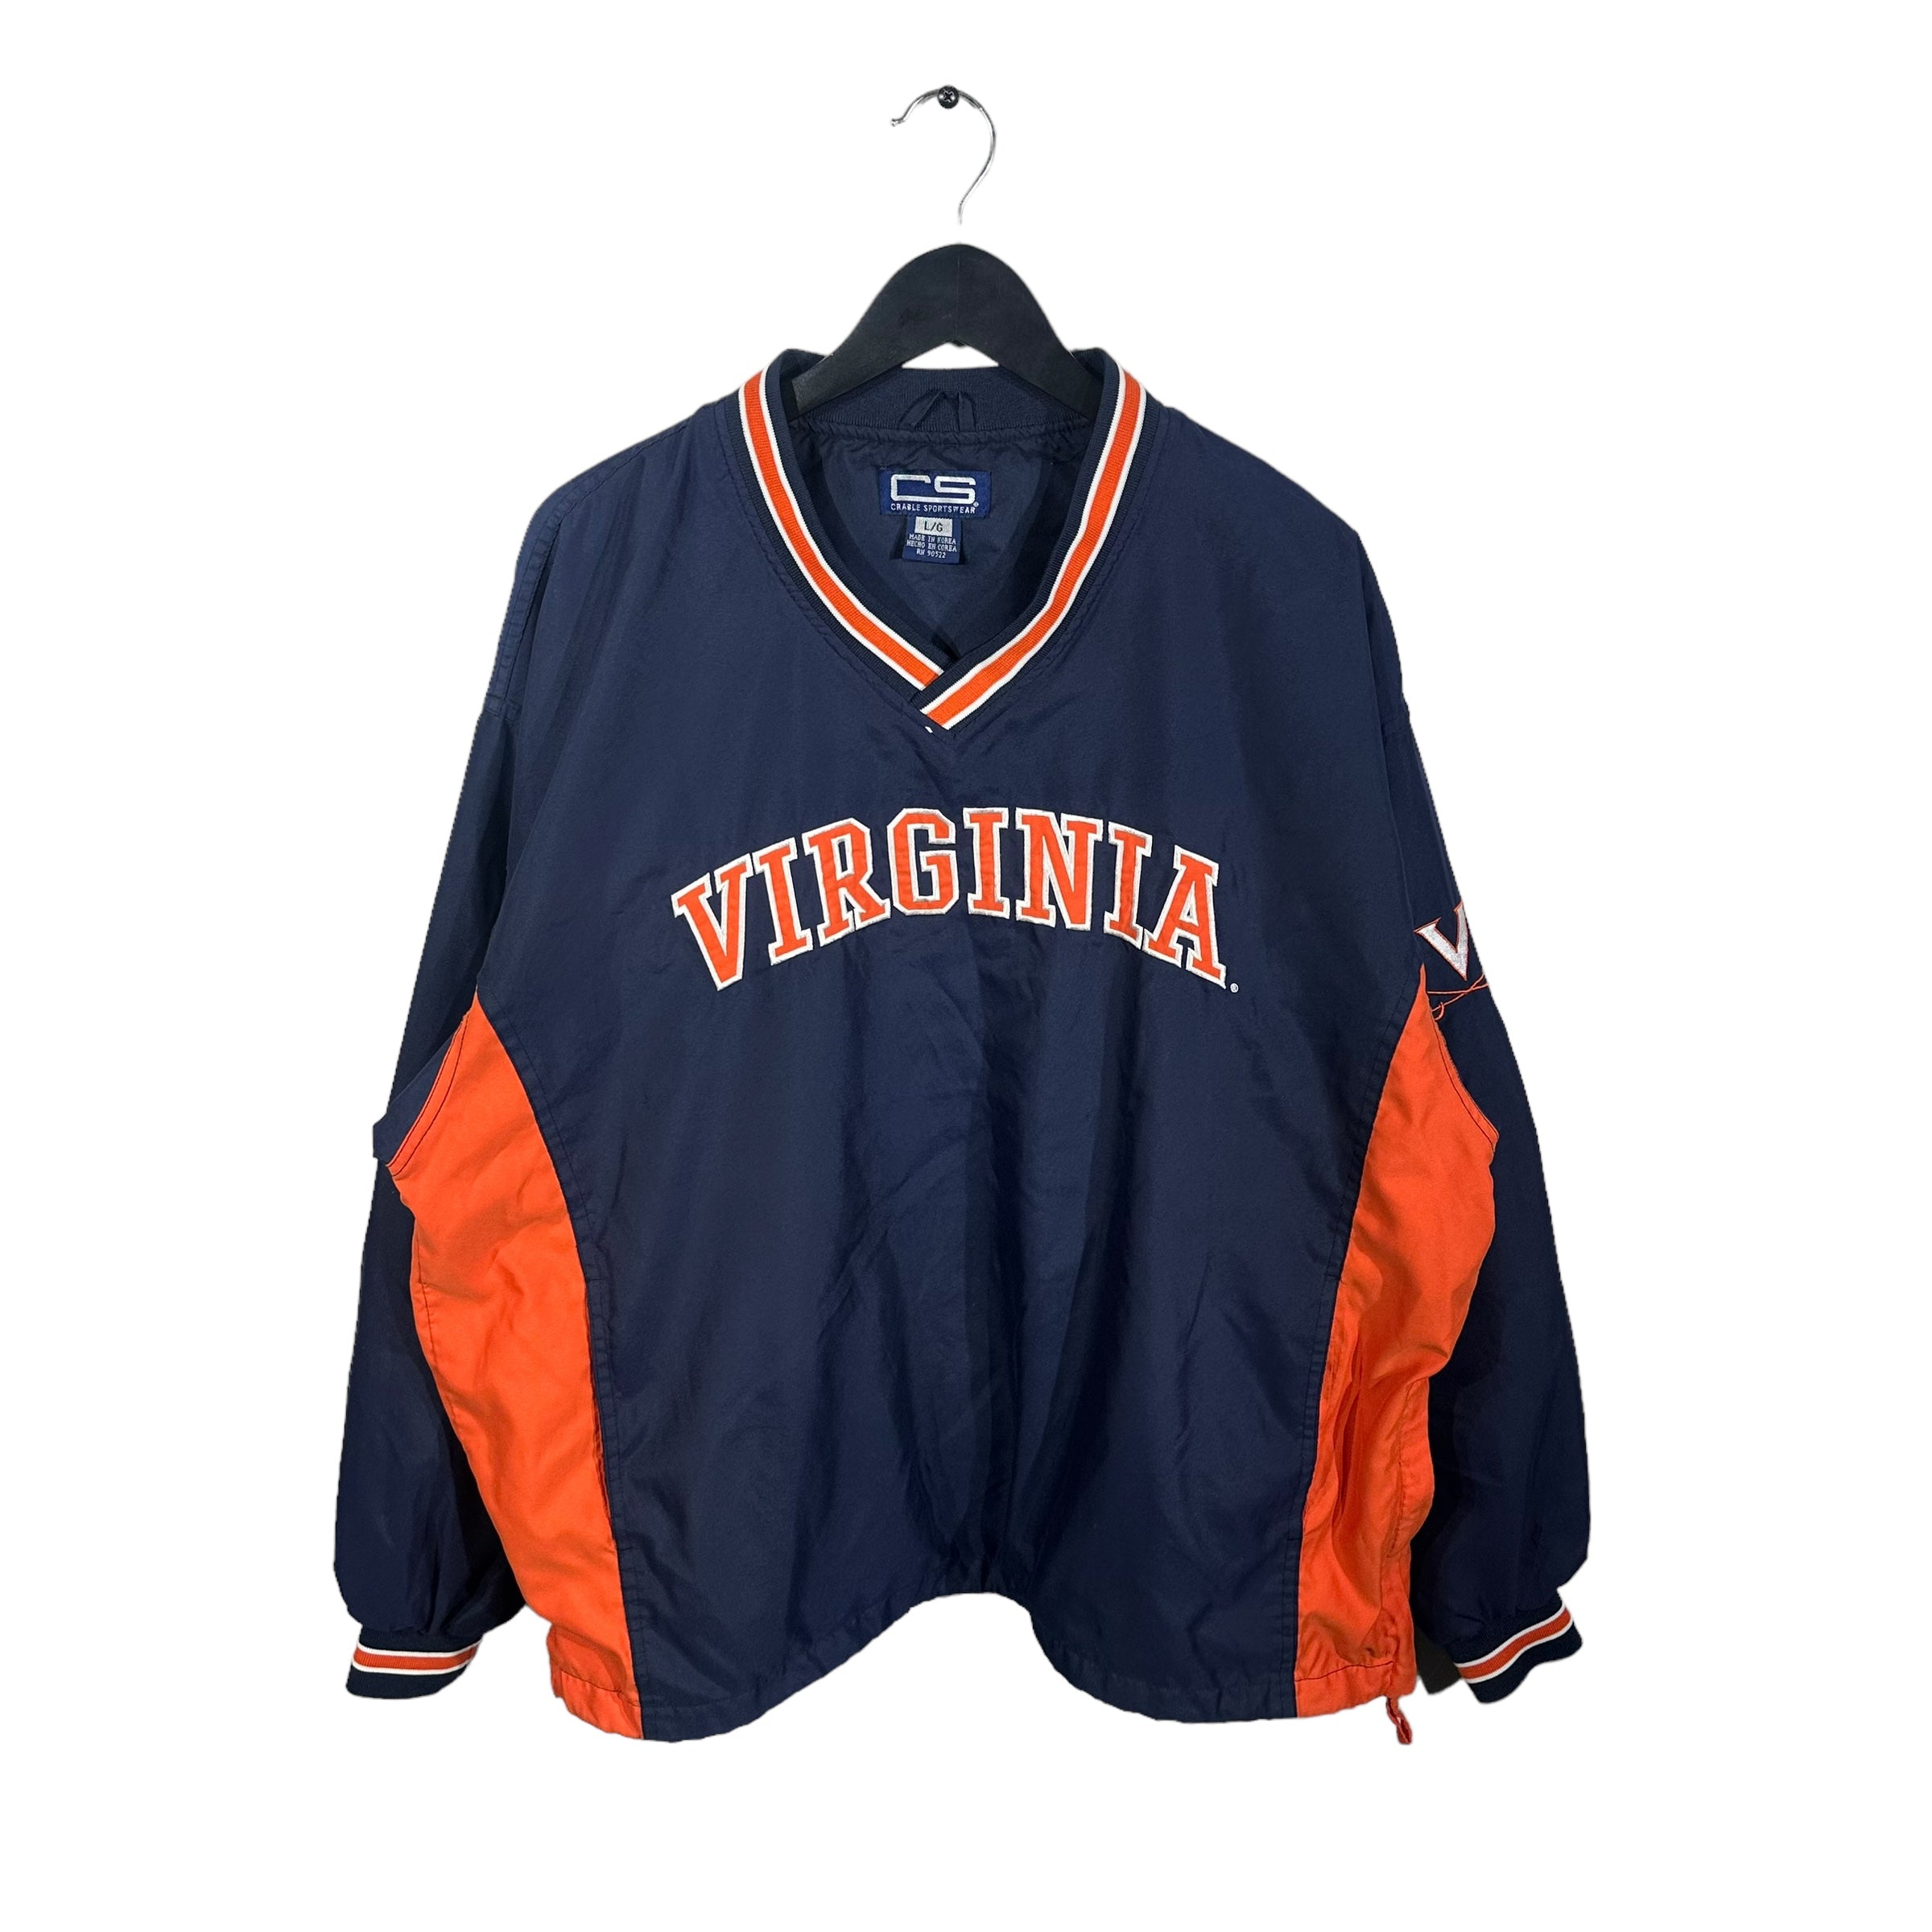 Vintage Virginia University Light Jacket